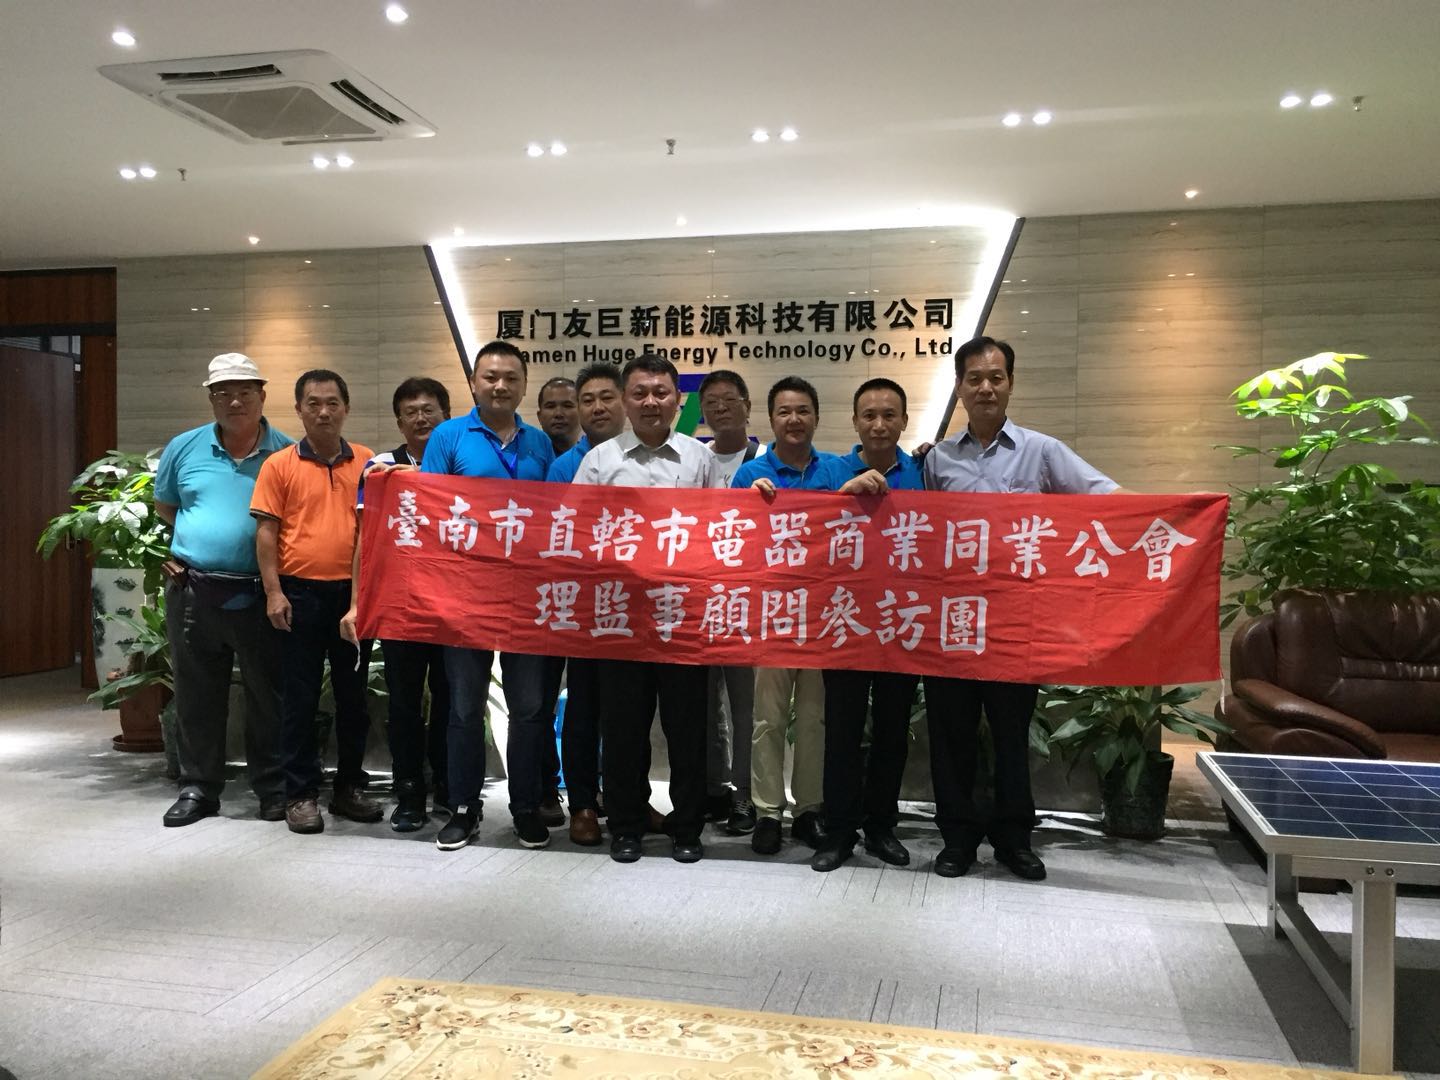 Ταϊβάν Ταϊνάν Επισκέπτονται οι ηγέτες της επιτροπής ηλεκτρικών συσκευών και οι ηγέτες της επιτροπής περιβαλλοντικής προστασίας της Ταϊβάν πράσινης ενέργειας